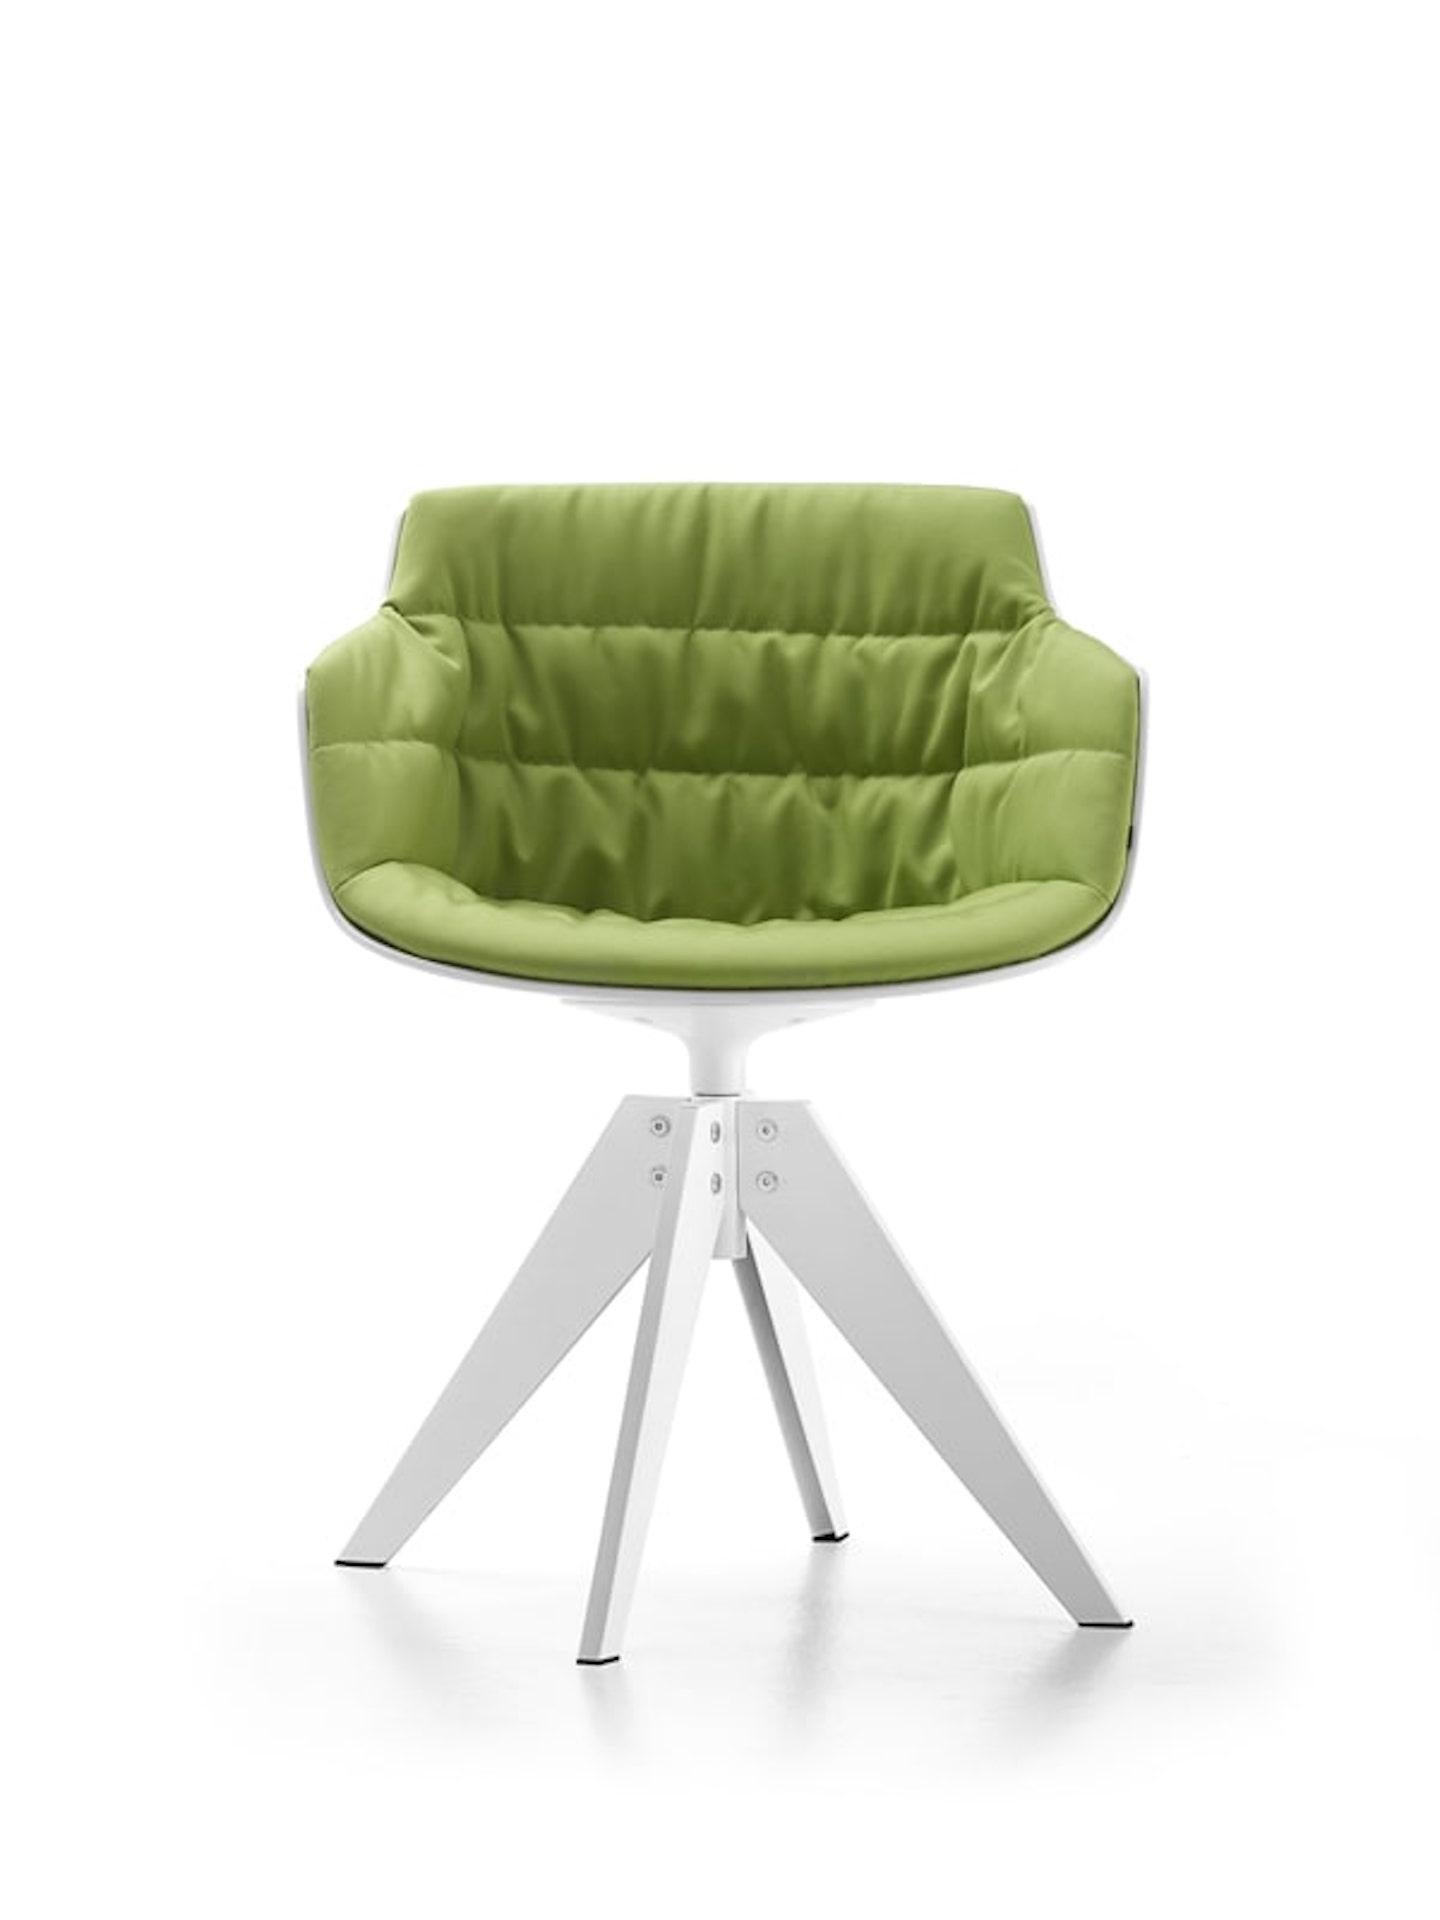 Der angegebene Preis bezieht sich auf den Stahlsockel und den Ausgangsstoff.
Flow Slim, ein Stuhl, der erstmals 2014 als natürliche Weiterentwicklung der Flow-Familie entworfen wurde, vereint Komfort und Ästhetik.

Ein geschwungener Sessel mit